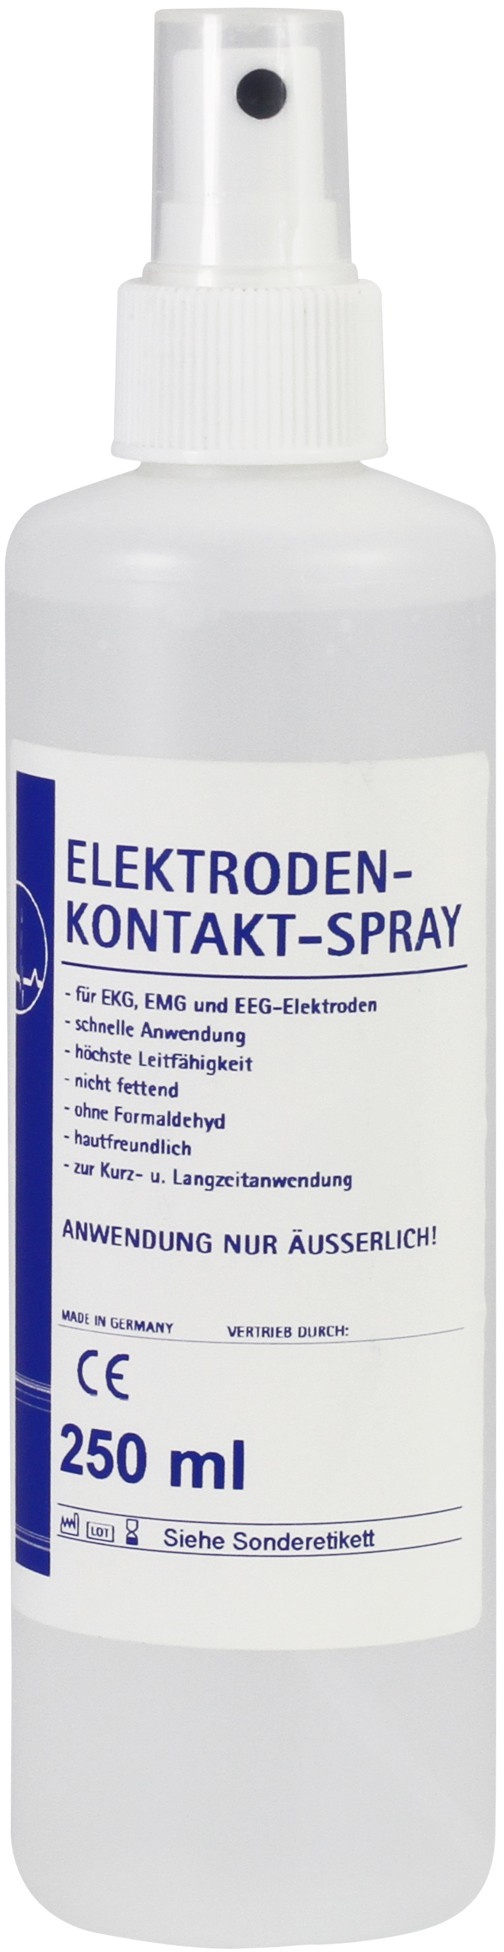 Elektroden-Kontakt-Spray für EKG, EMG und EEG-Elektroden